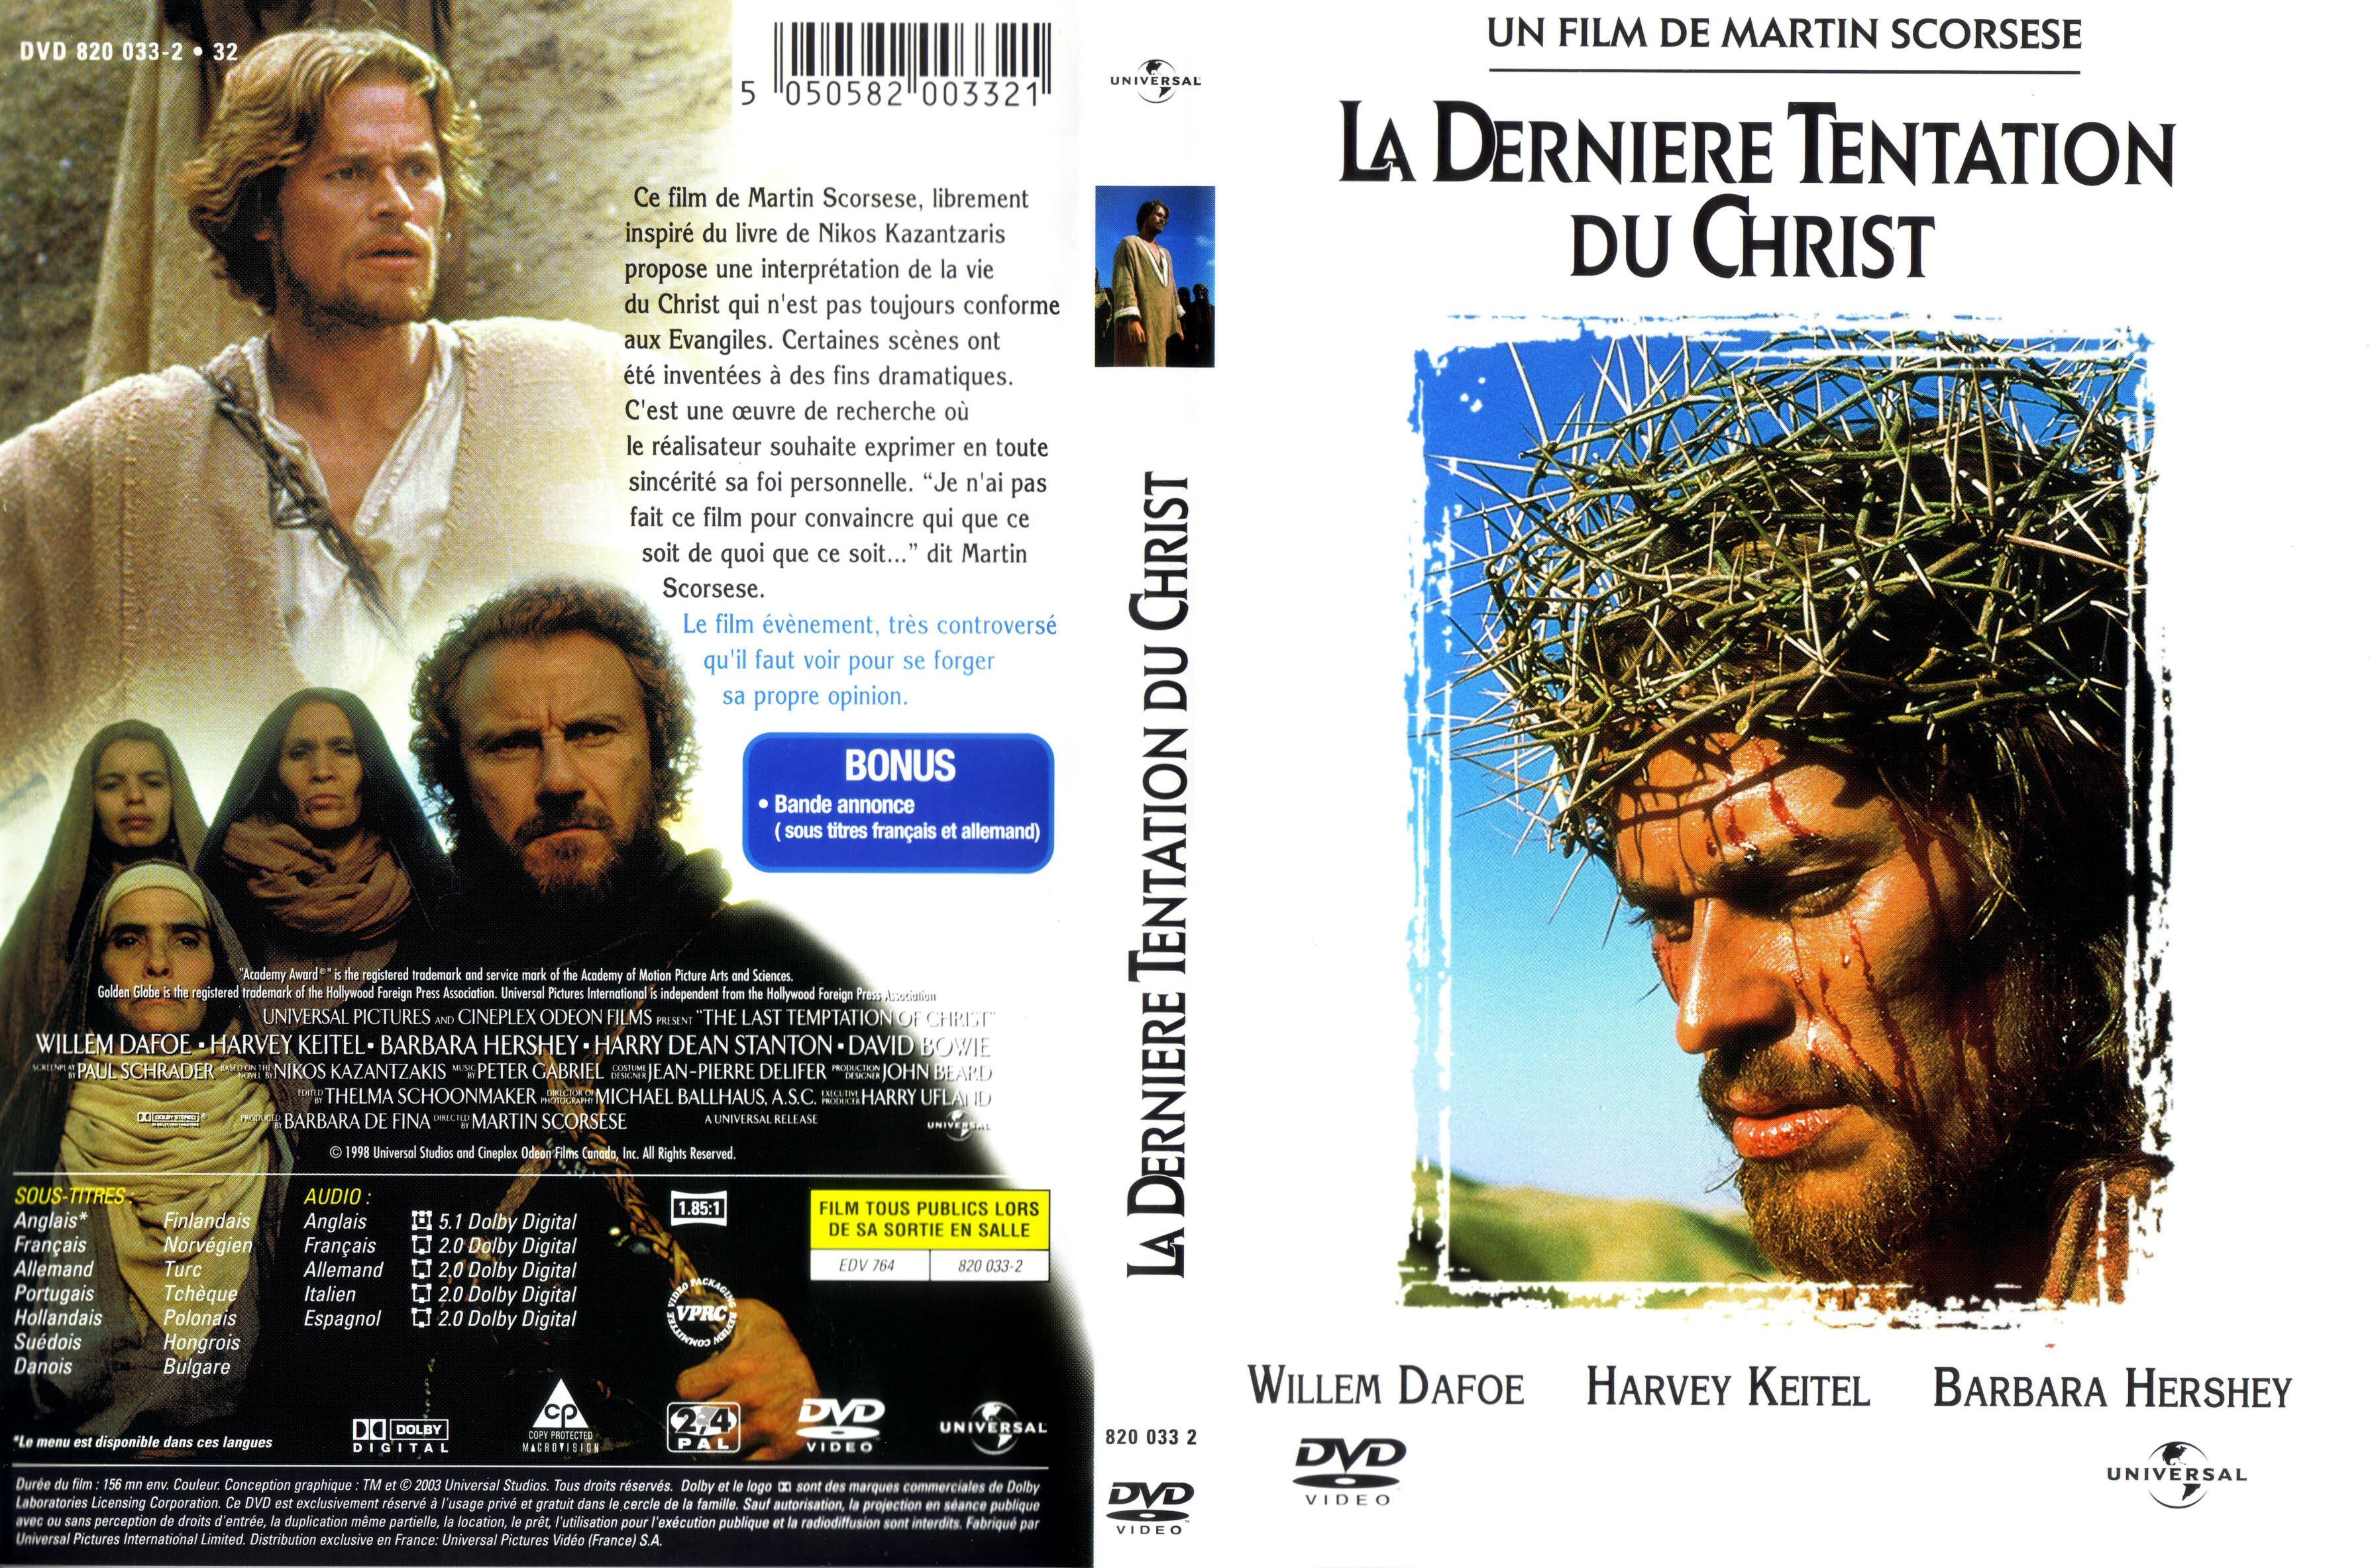 Jaquette DVD La dernire tentation du christ